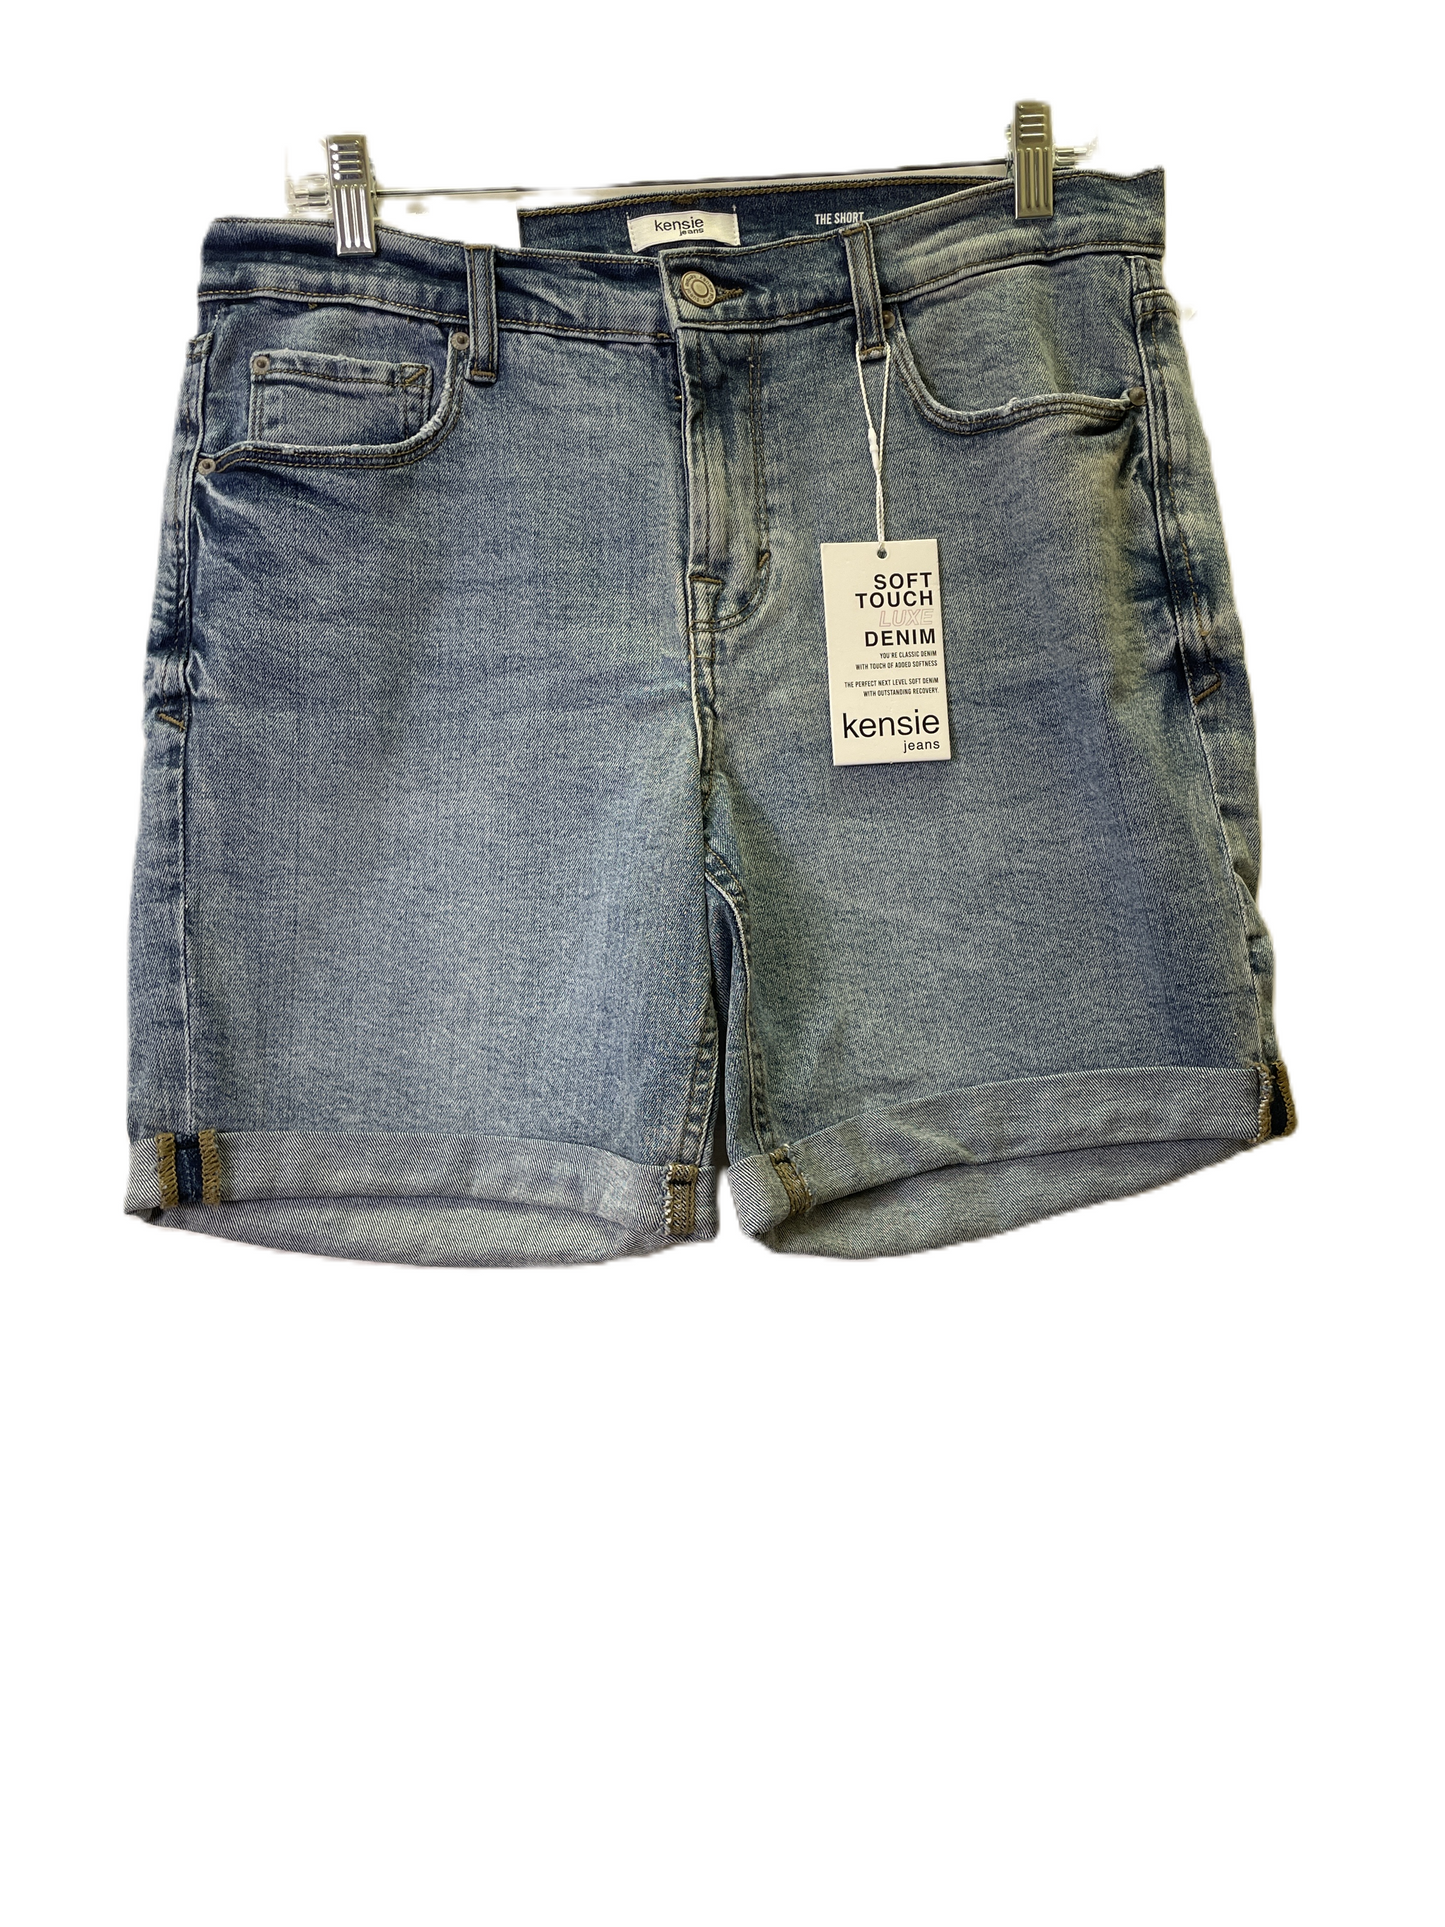 Blue Denim Shorts By Kensie, Size: 10